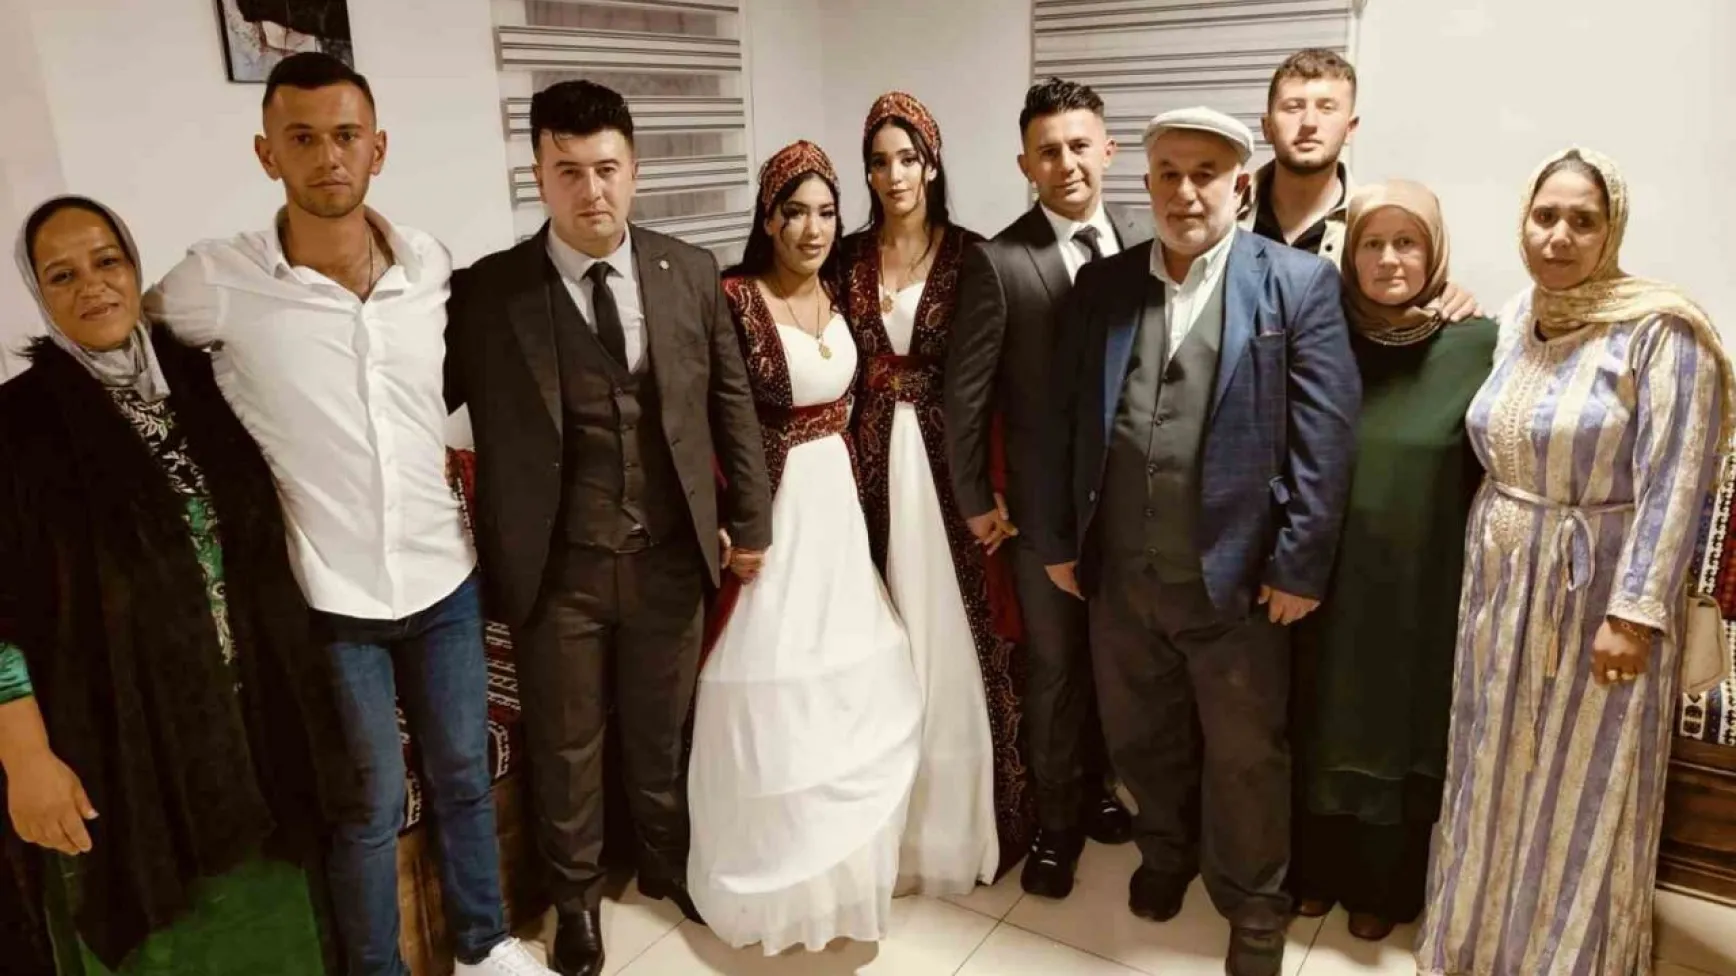 Fas'tan Yozgat'a gelin geldiler, aynı düğünle dünya evine girdiler